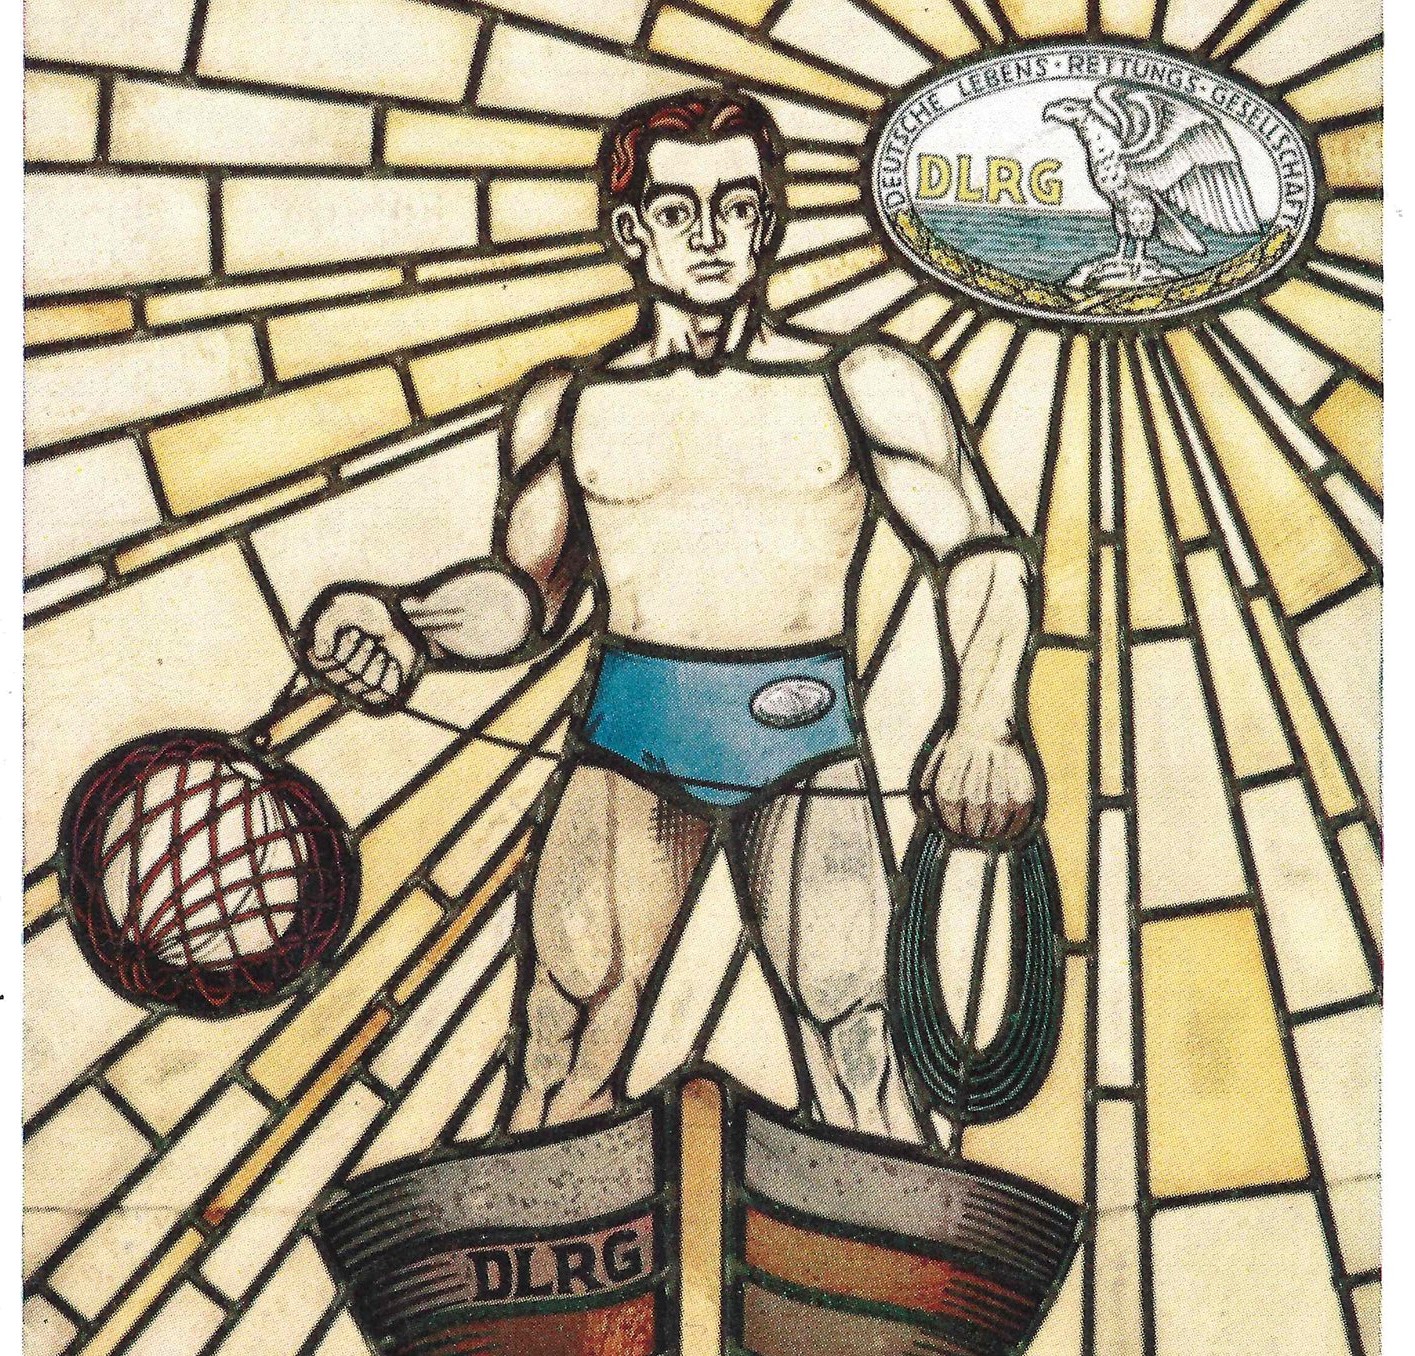 Postkarte mit einem Rettungsschwimmer im Boot und dem DLRG-Logo als Sonne, gemalt.